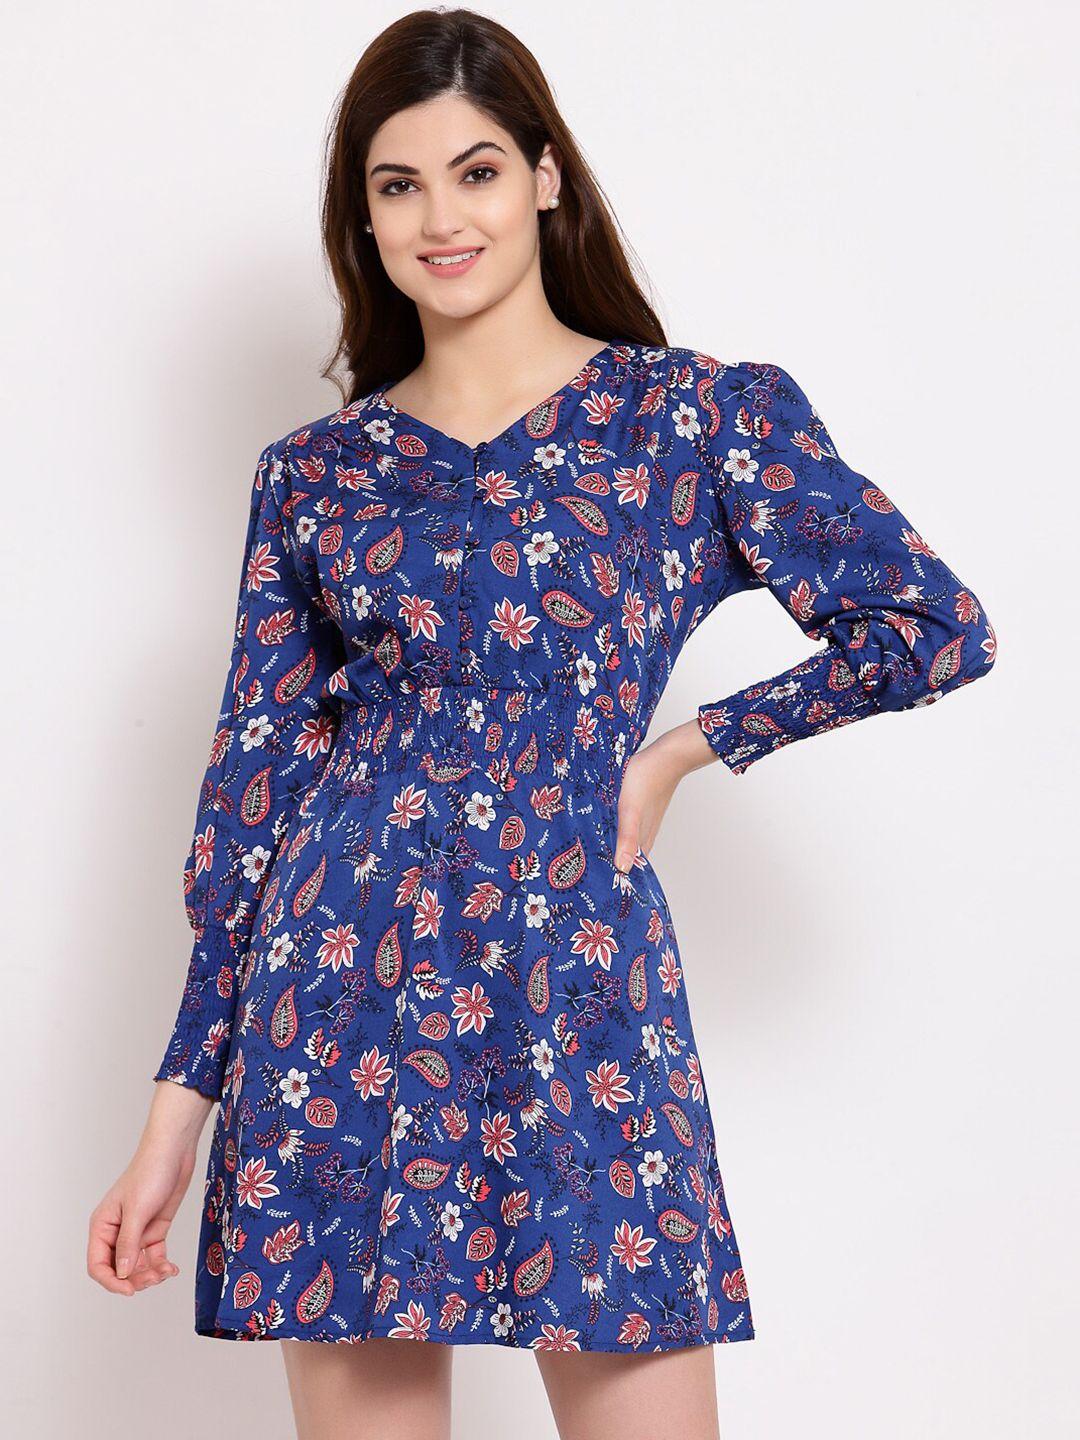 style quotient woman navy blue floral crepe dress